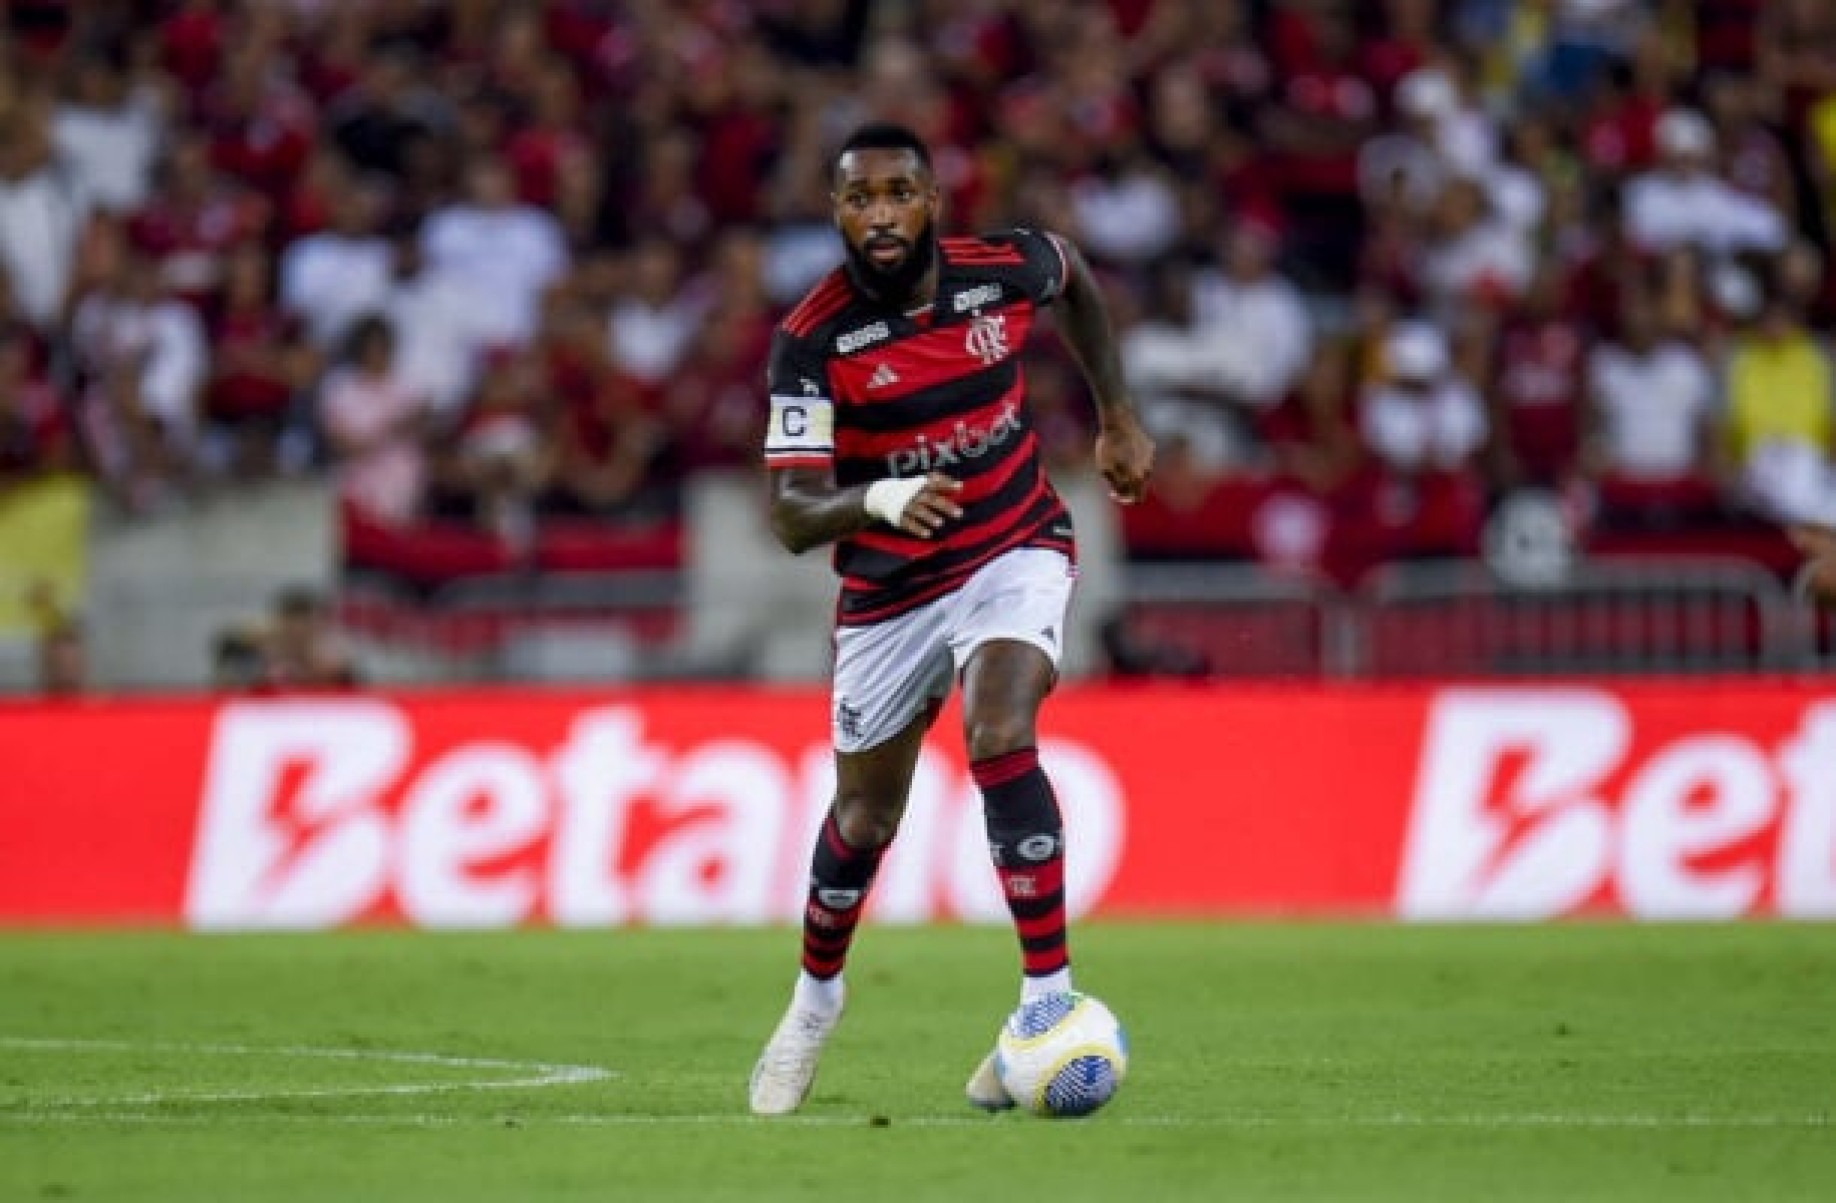 Gerson cita provocação de Paulinho, do Atlético, para motivar jogadores do Flamengo